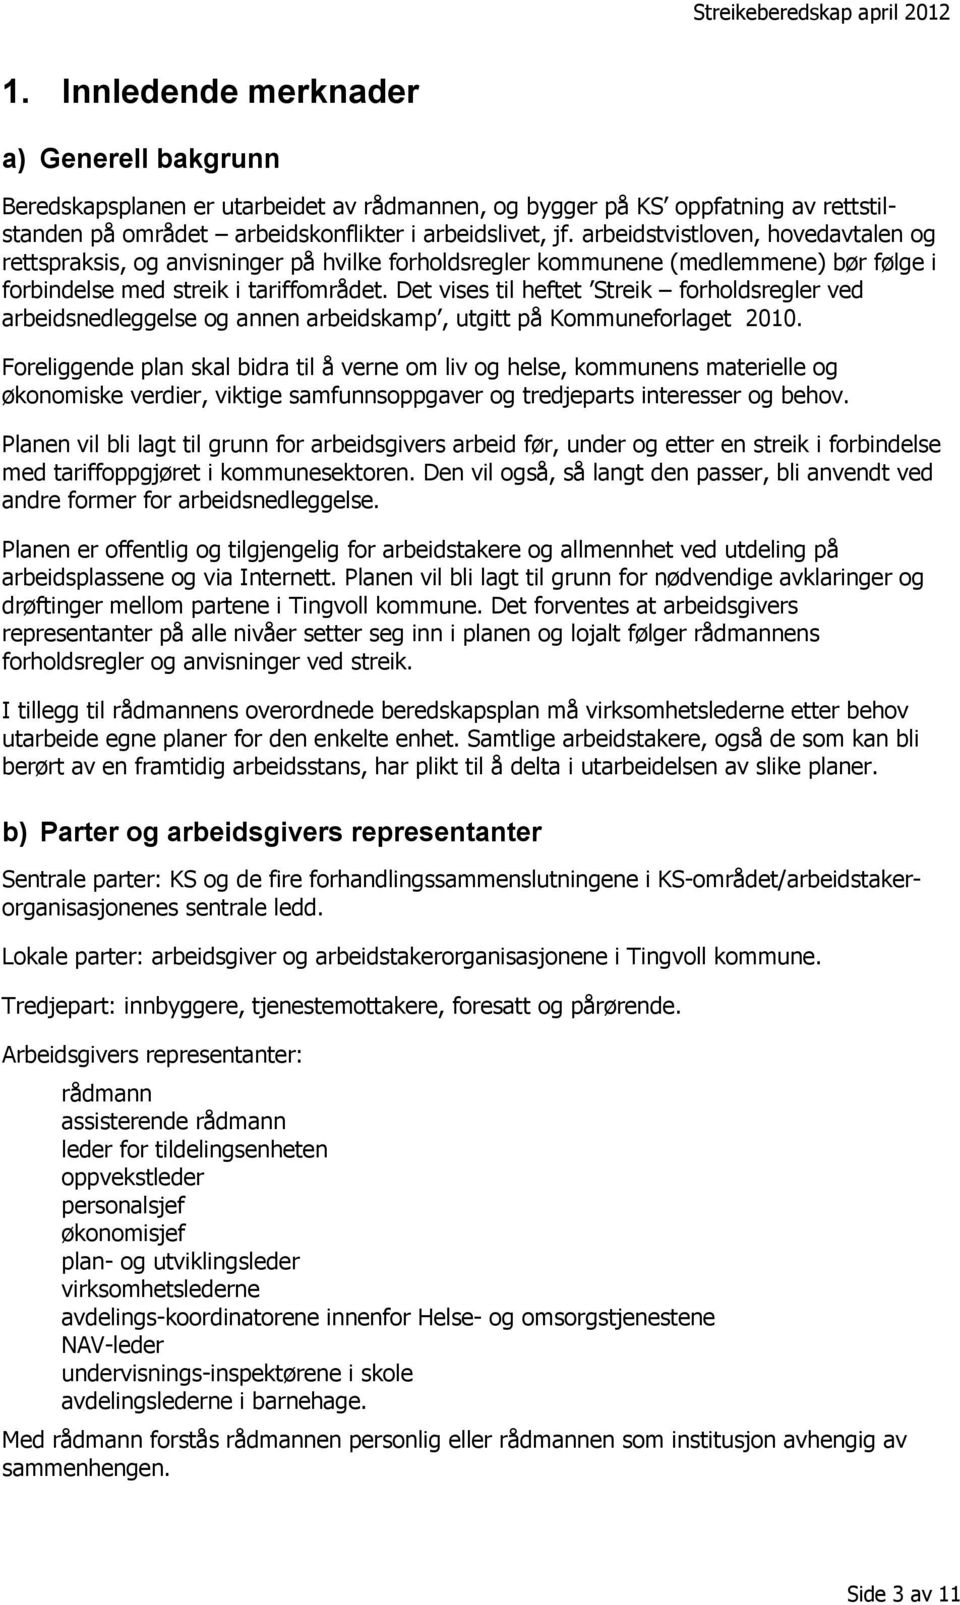 Det vises til heftet Streik forholdsregler ved arbeidsnedleggelse og annen arbeidskamp, utgitt på Kommuneforlaget 2010.